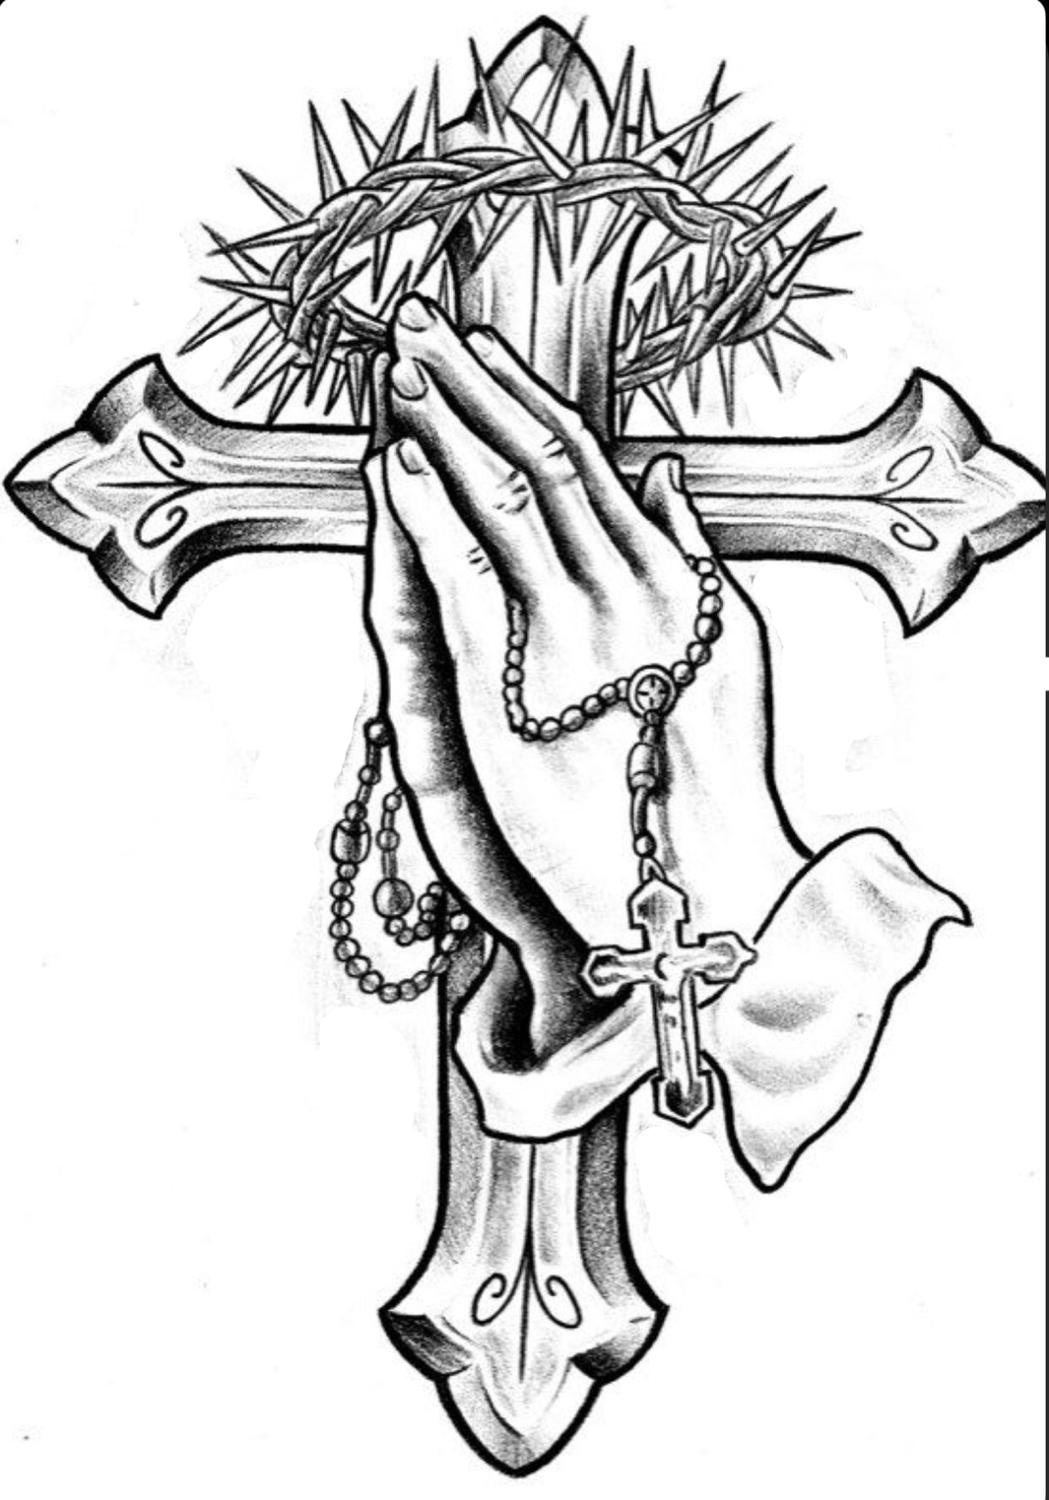 Тату православный крест на руке мужские эскизы